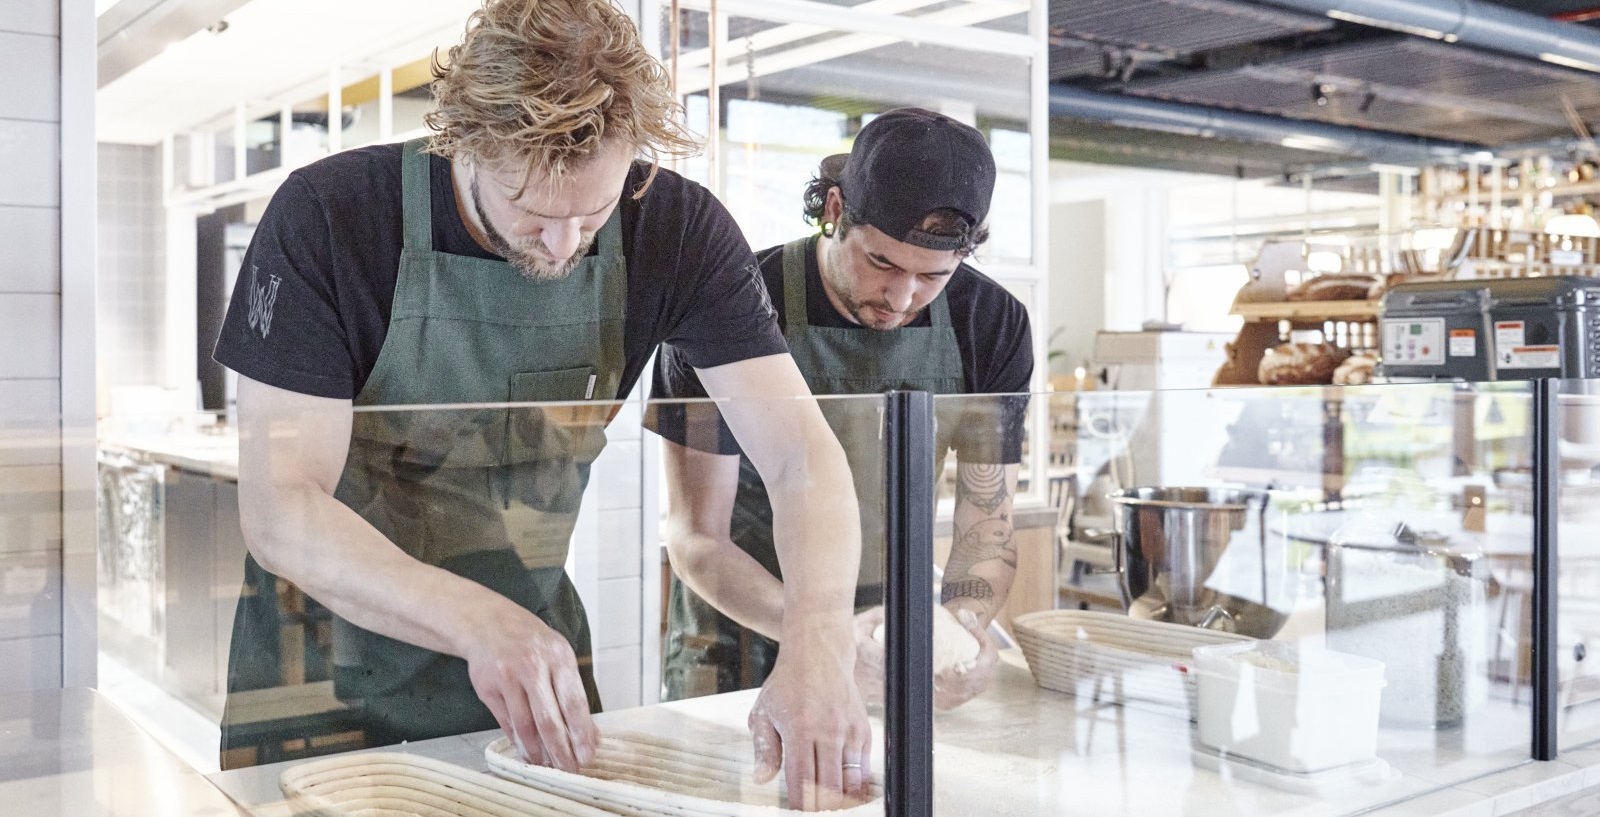 Deze Amsterdamse chefs hebben een eigen bakkerij aan de zaak